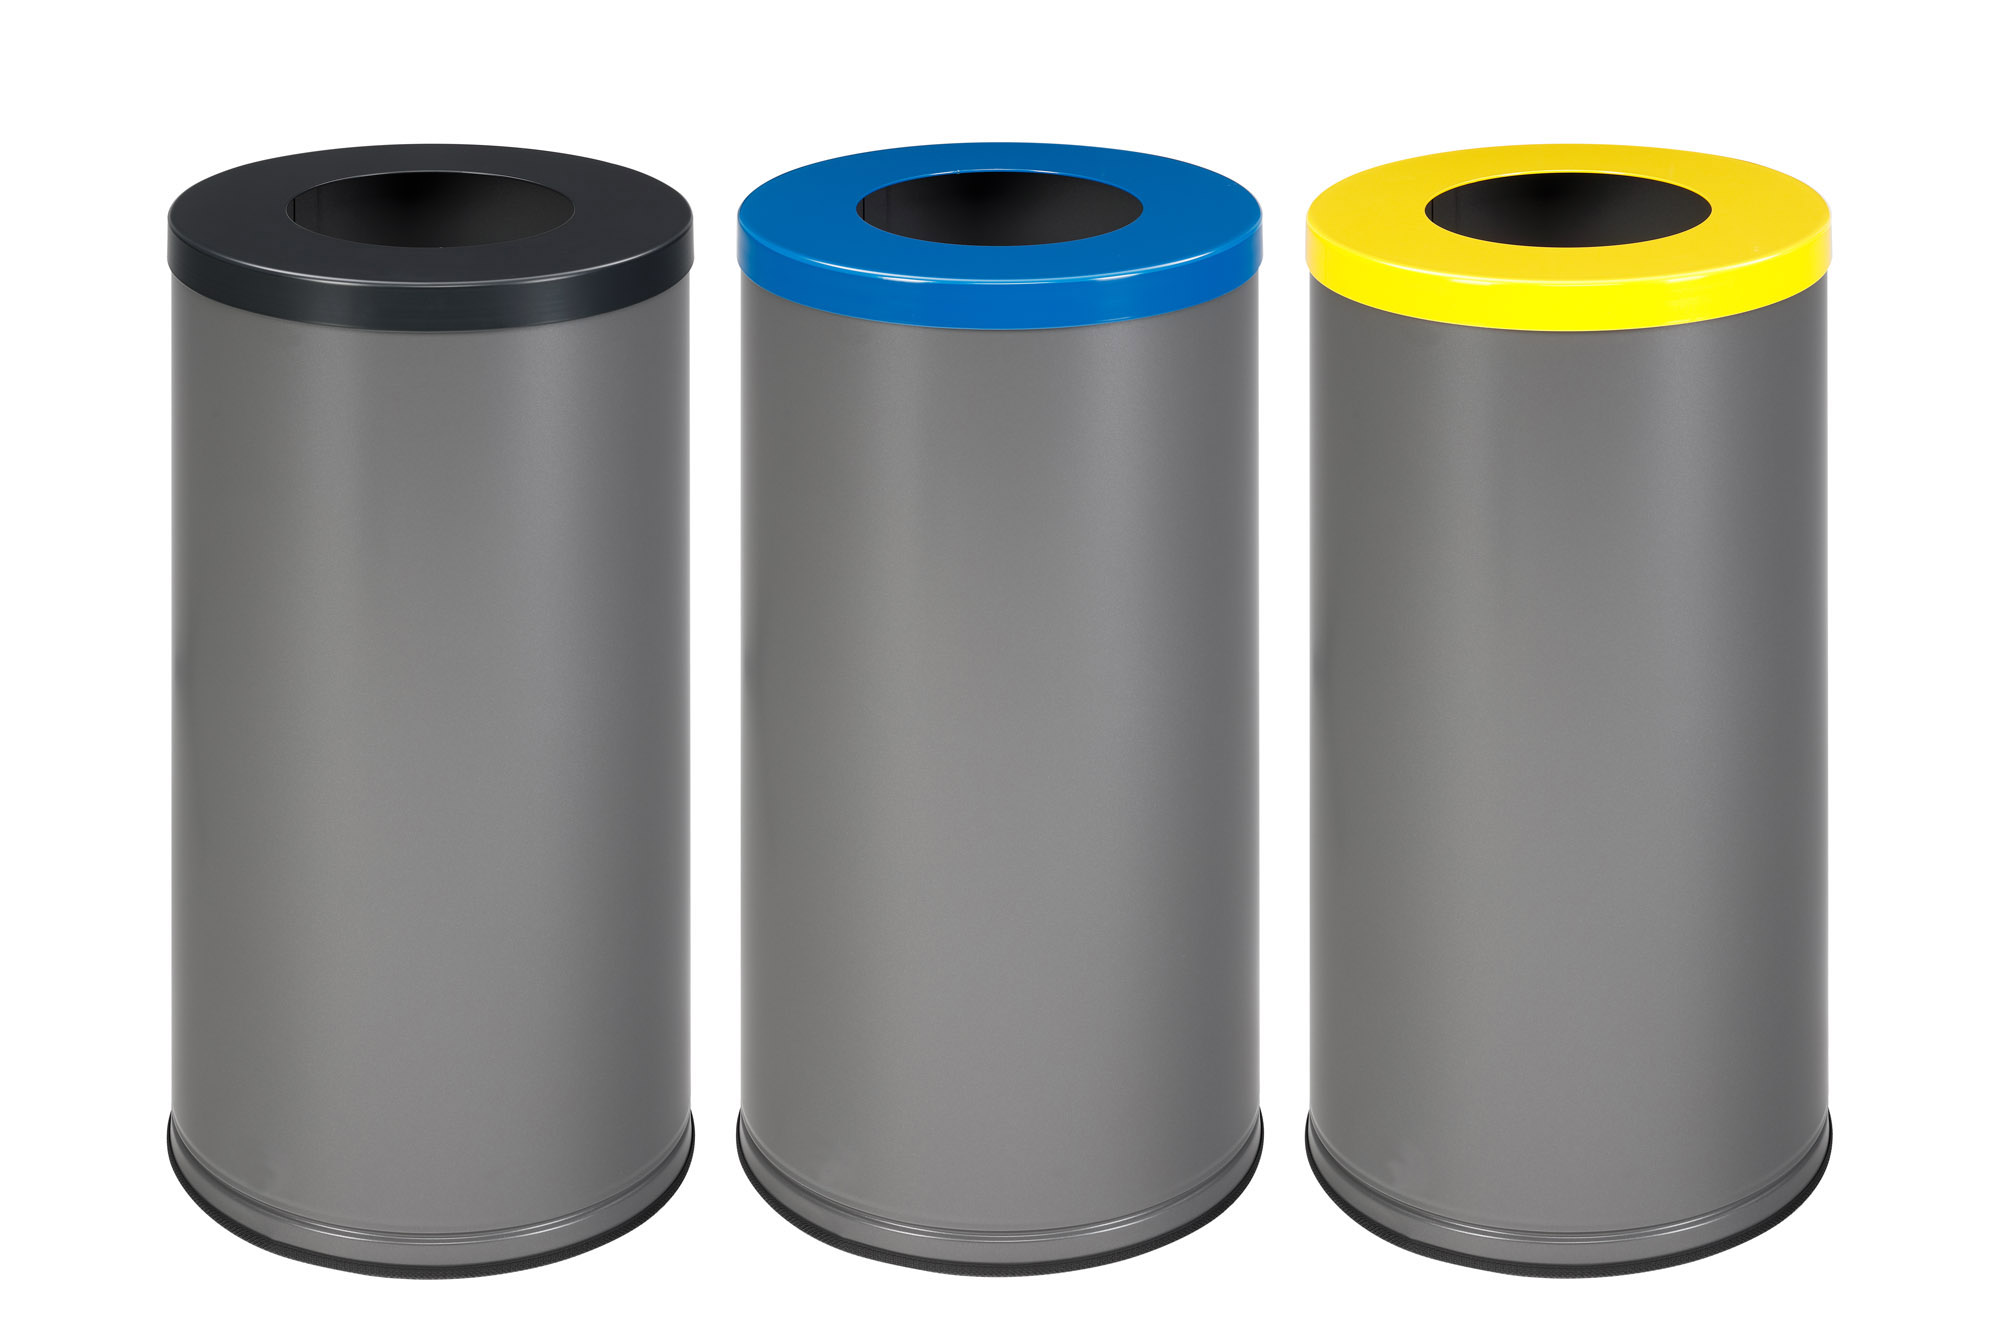 Modellbeispiel: Abfallbehälter 'Cubo Setenta' 70 Liter aus Stahl, versch. Farben (Art. 41564.0002, 41564.0003. 41564.0001)